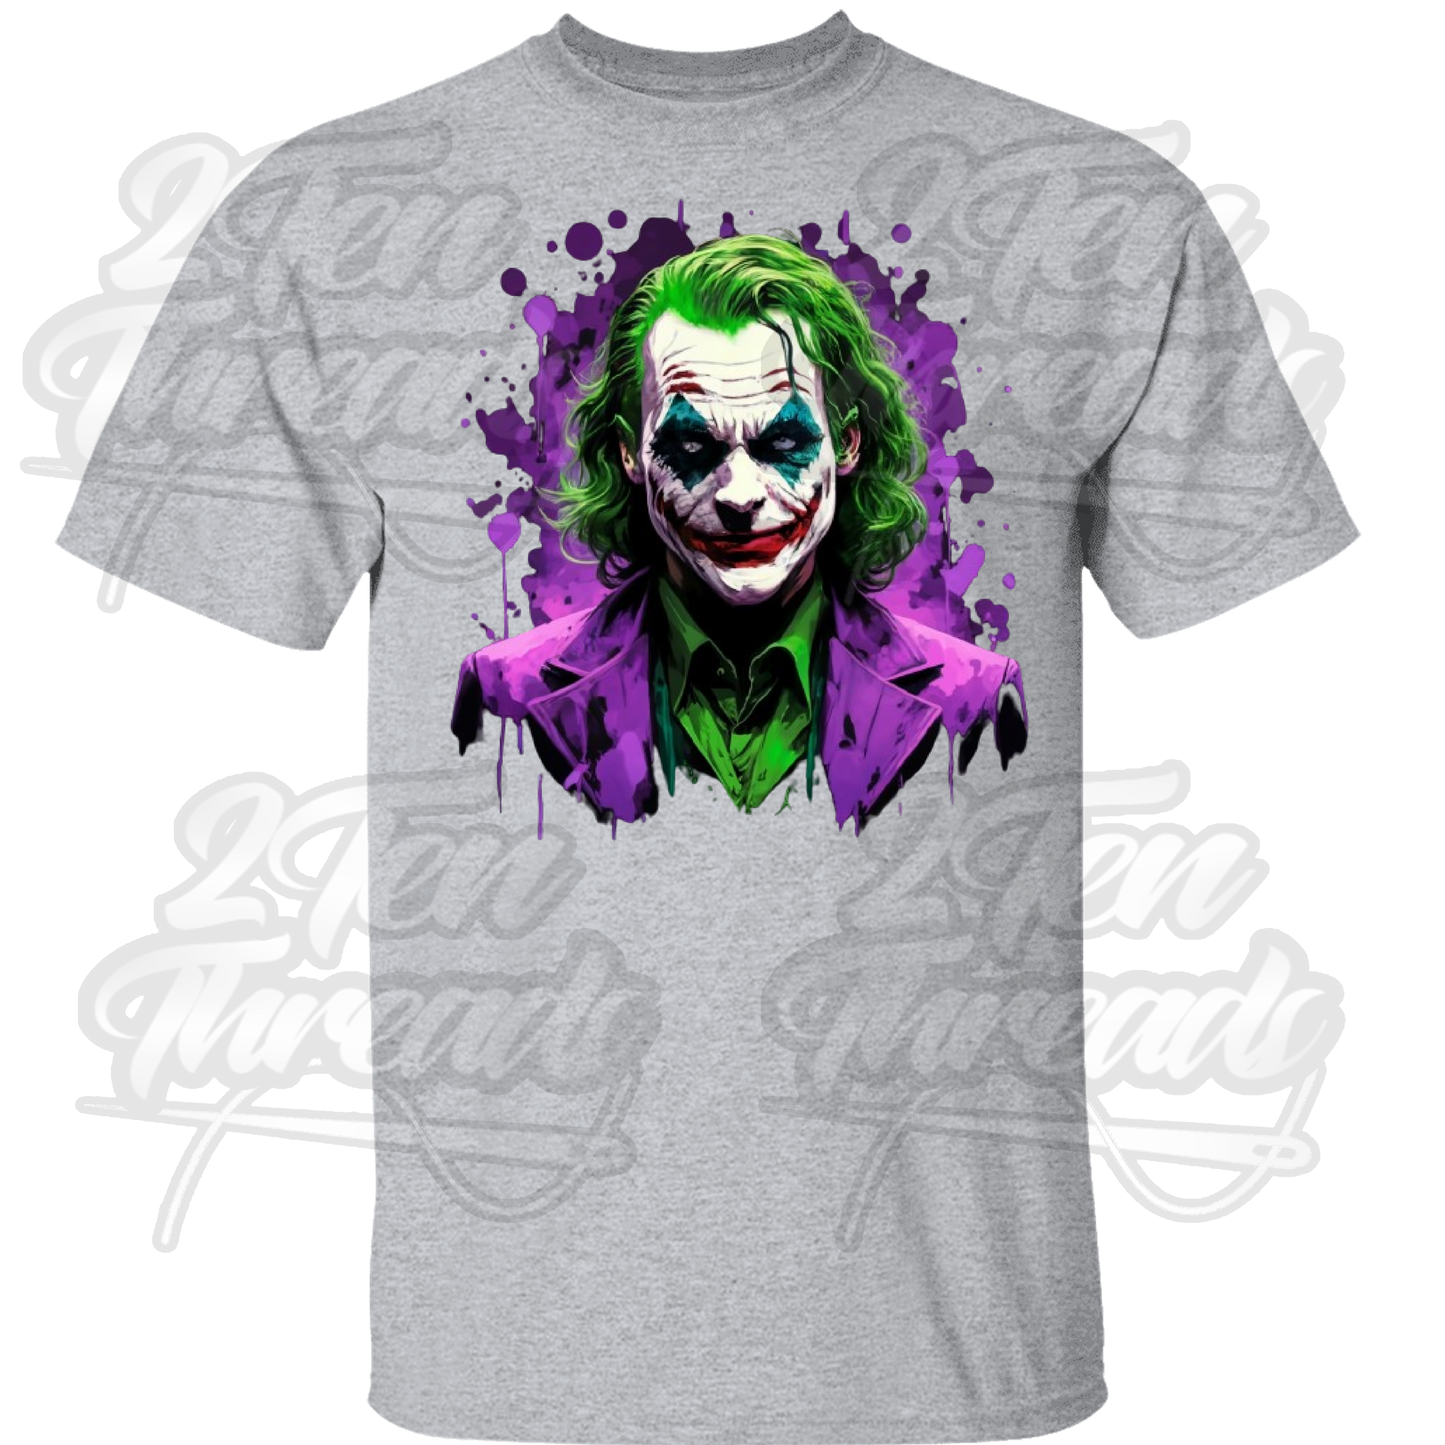 The Joker Shirt